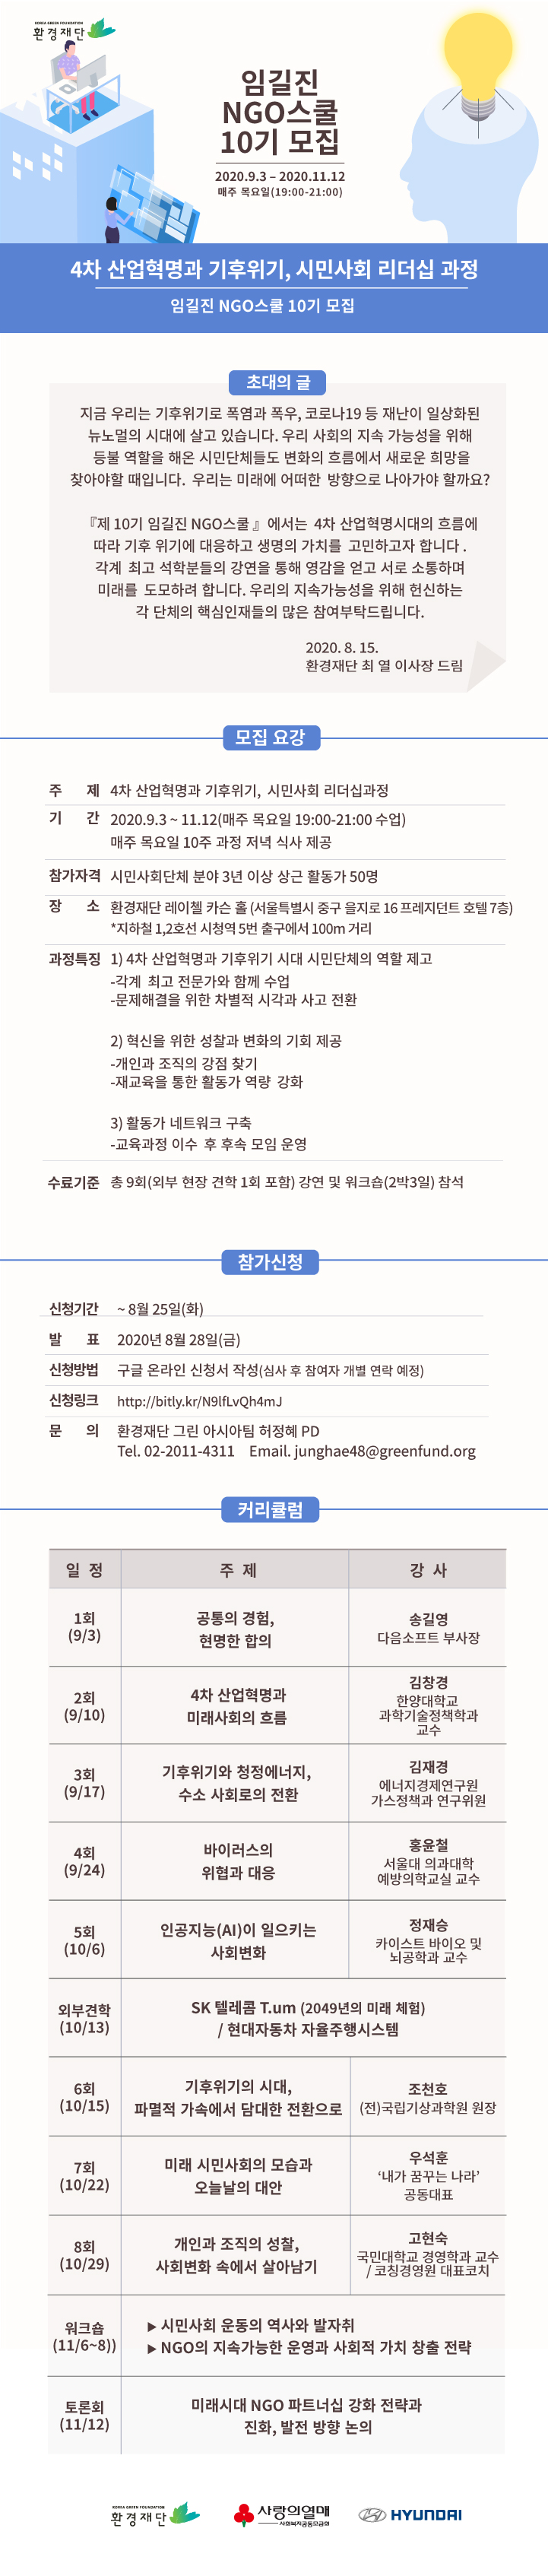 2020-임길진-NGO스쿨-웹포스터_최종.jpg